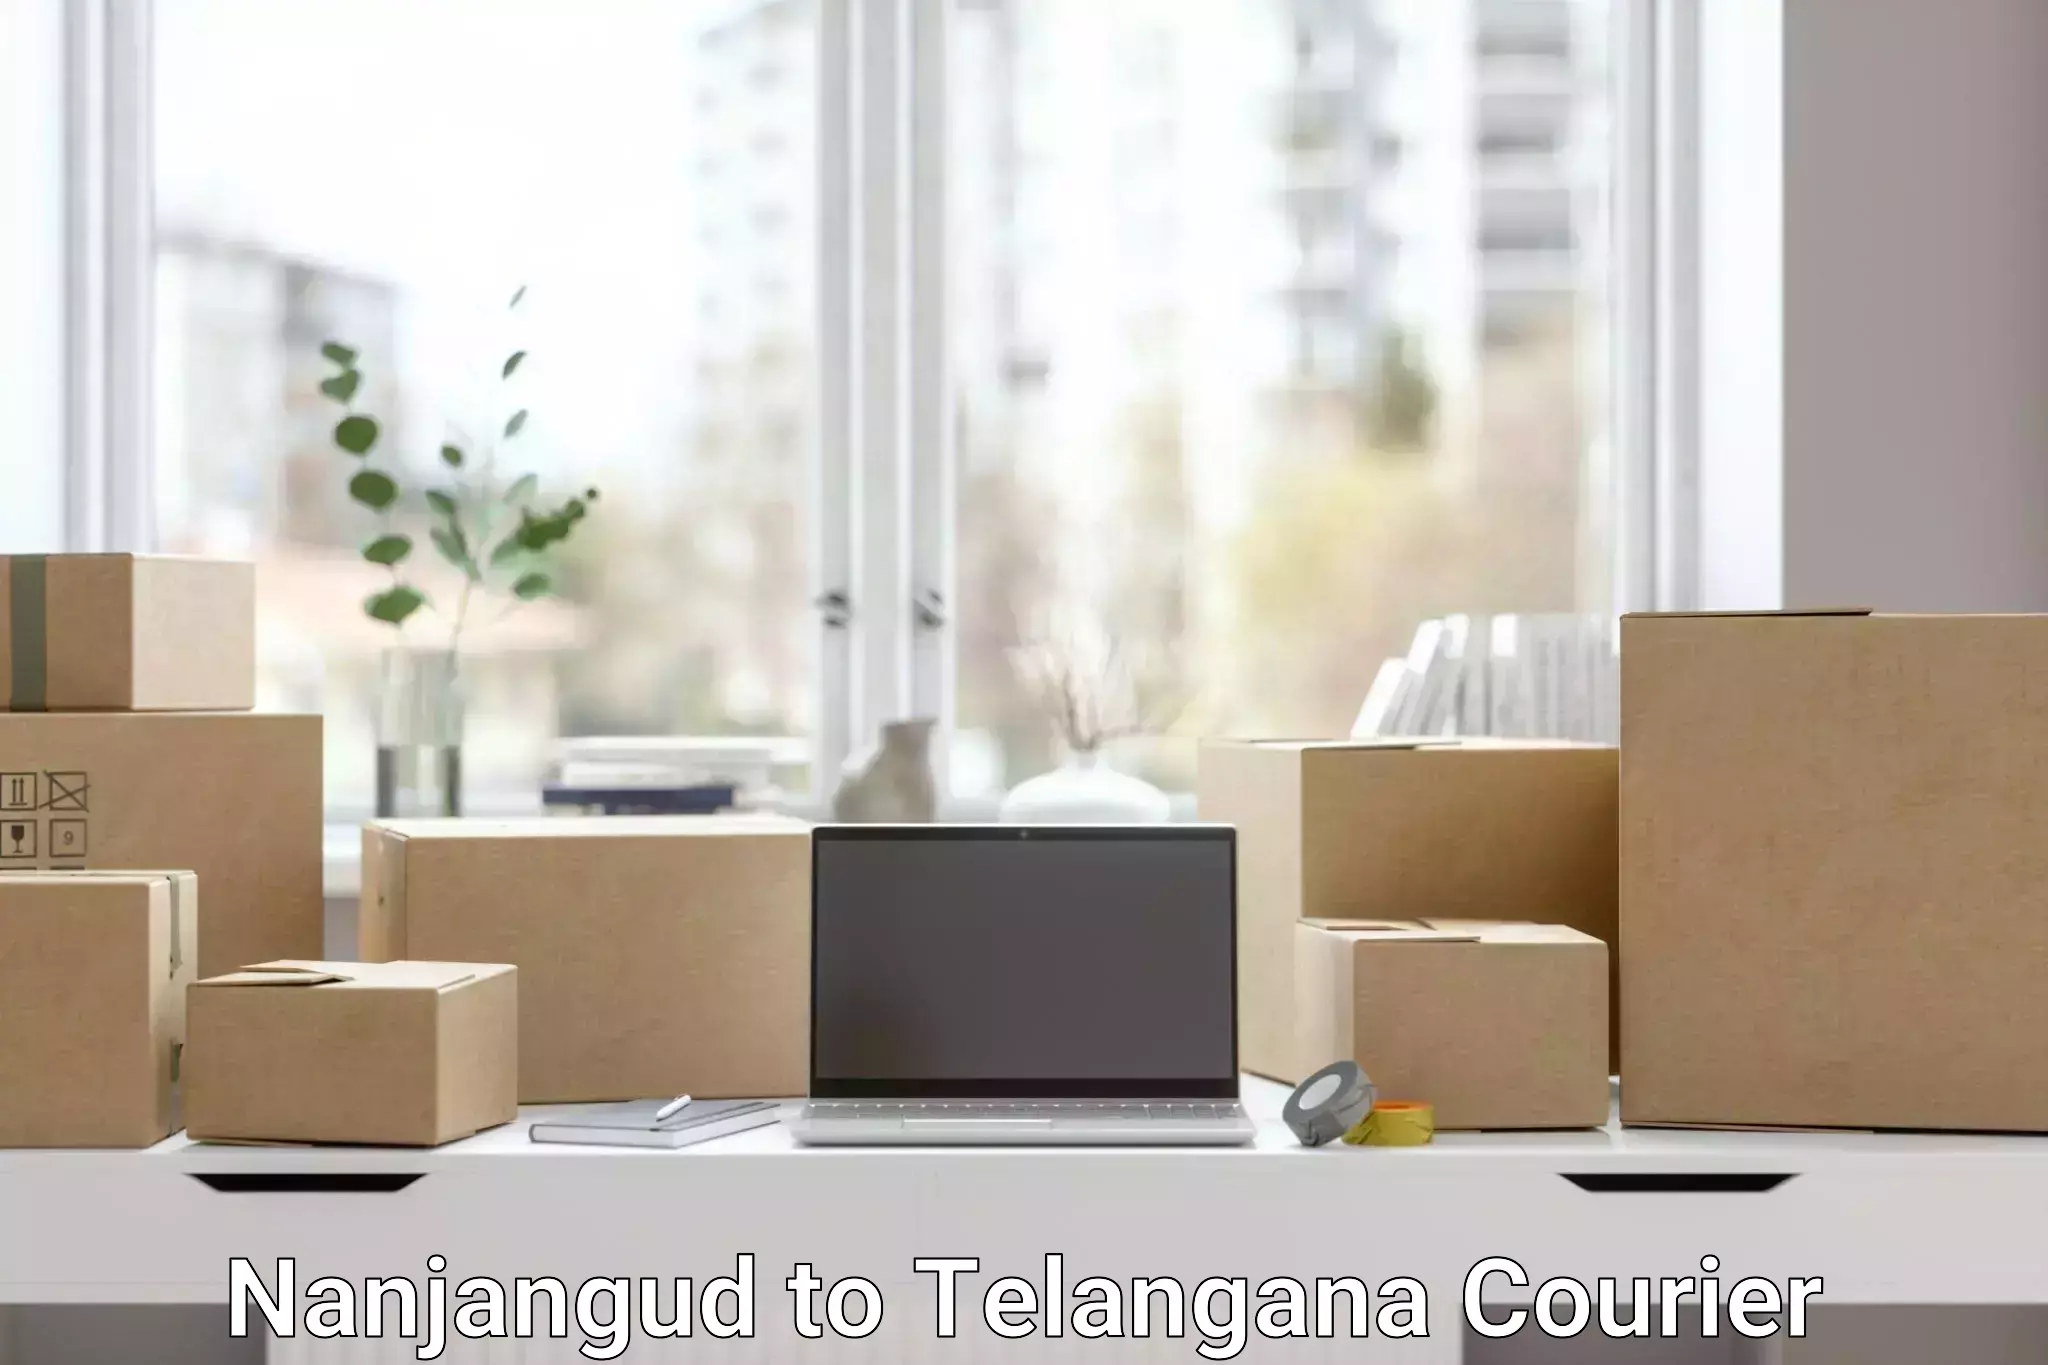 Digital courier platforms Nanjangud to IIT Hyderabad